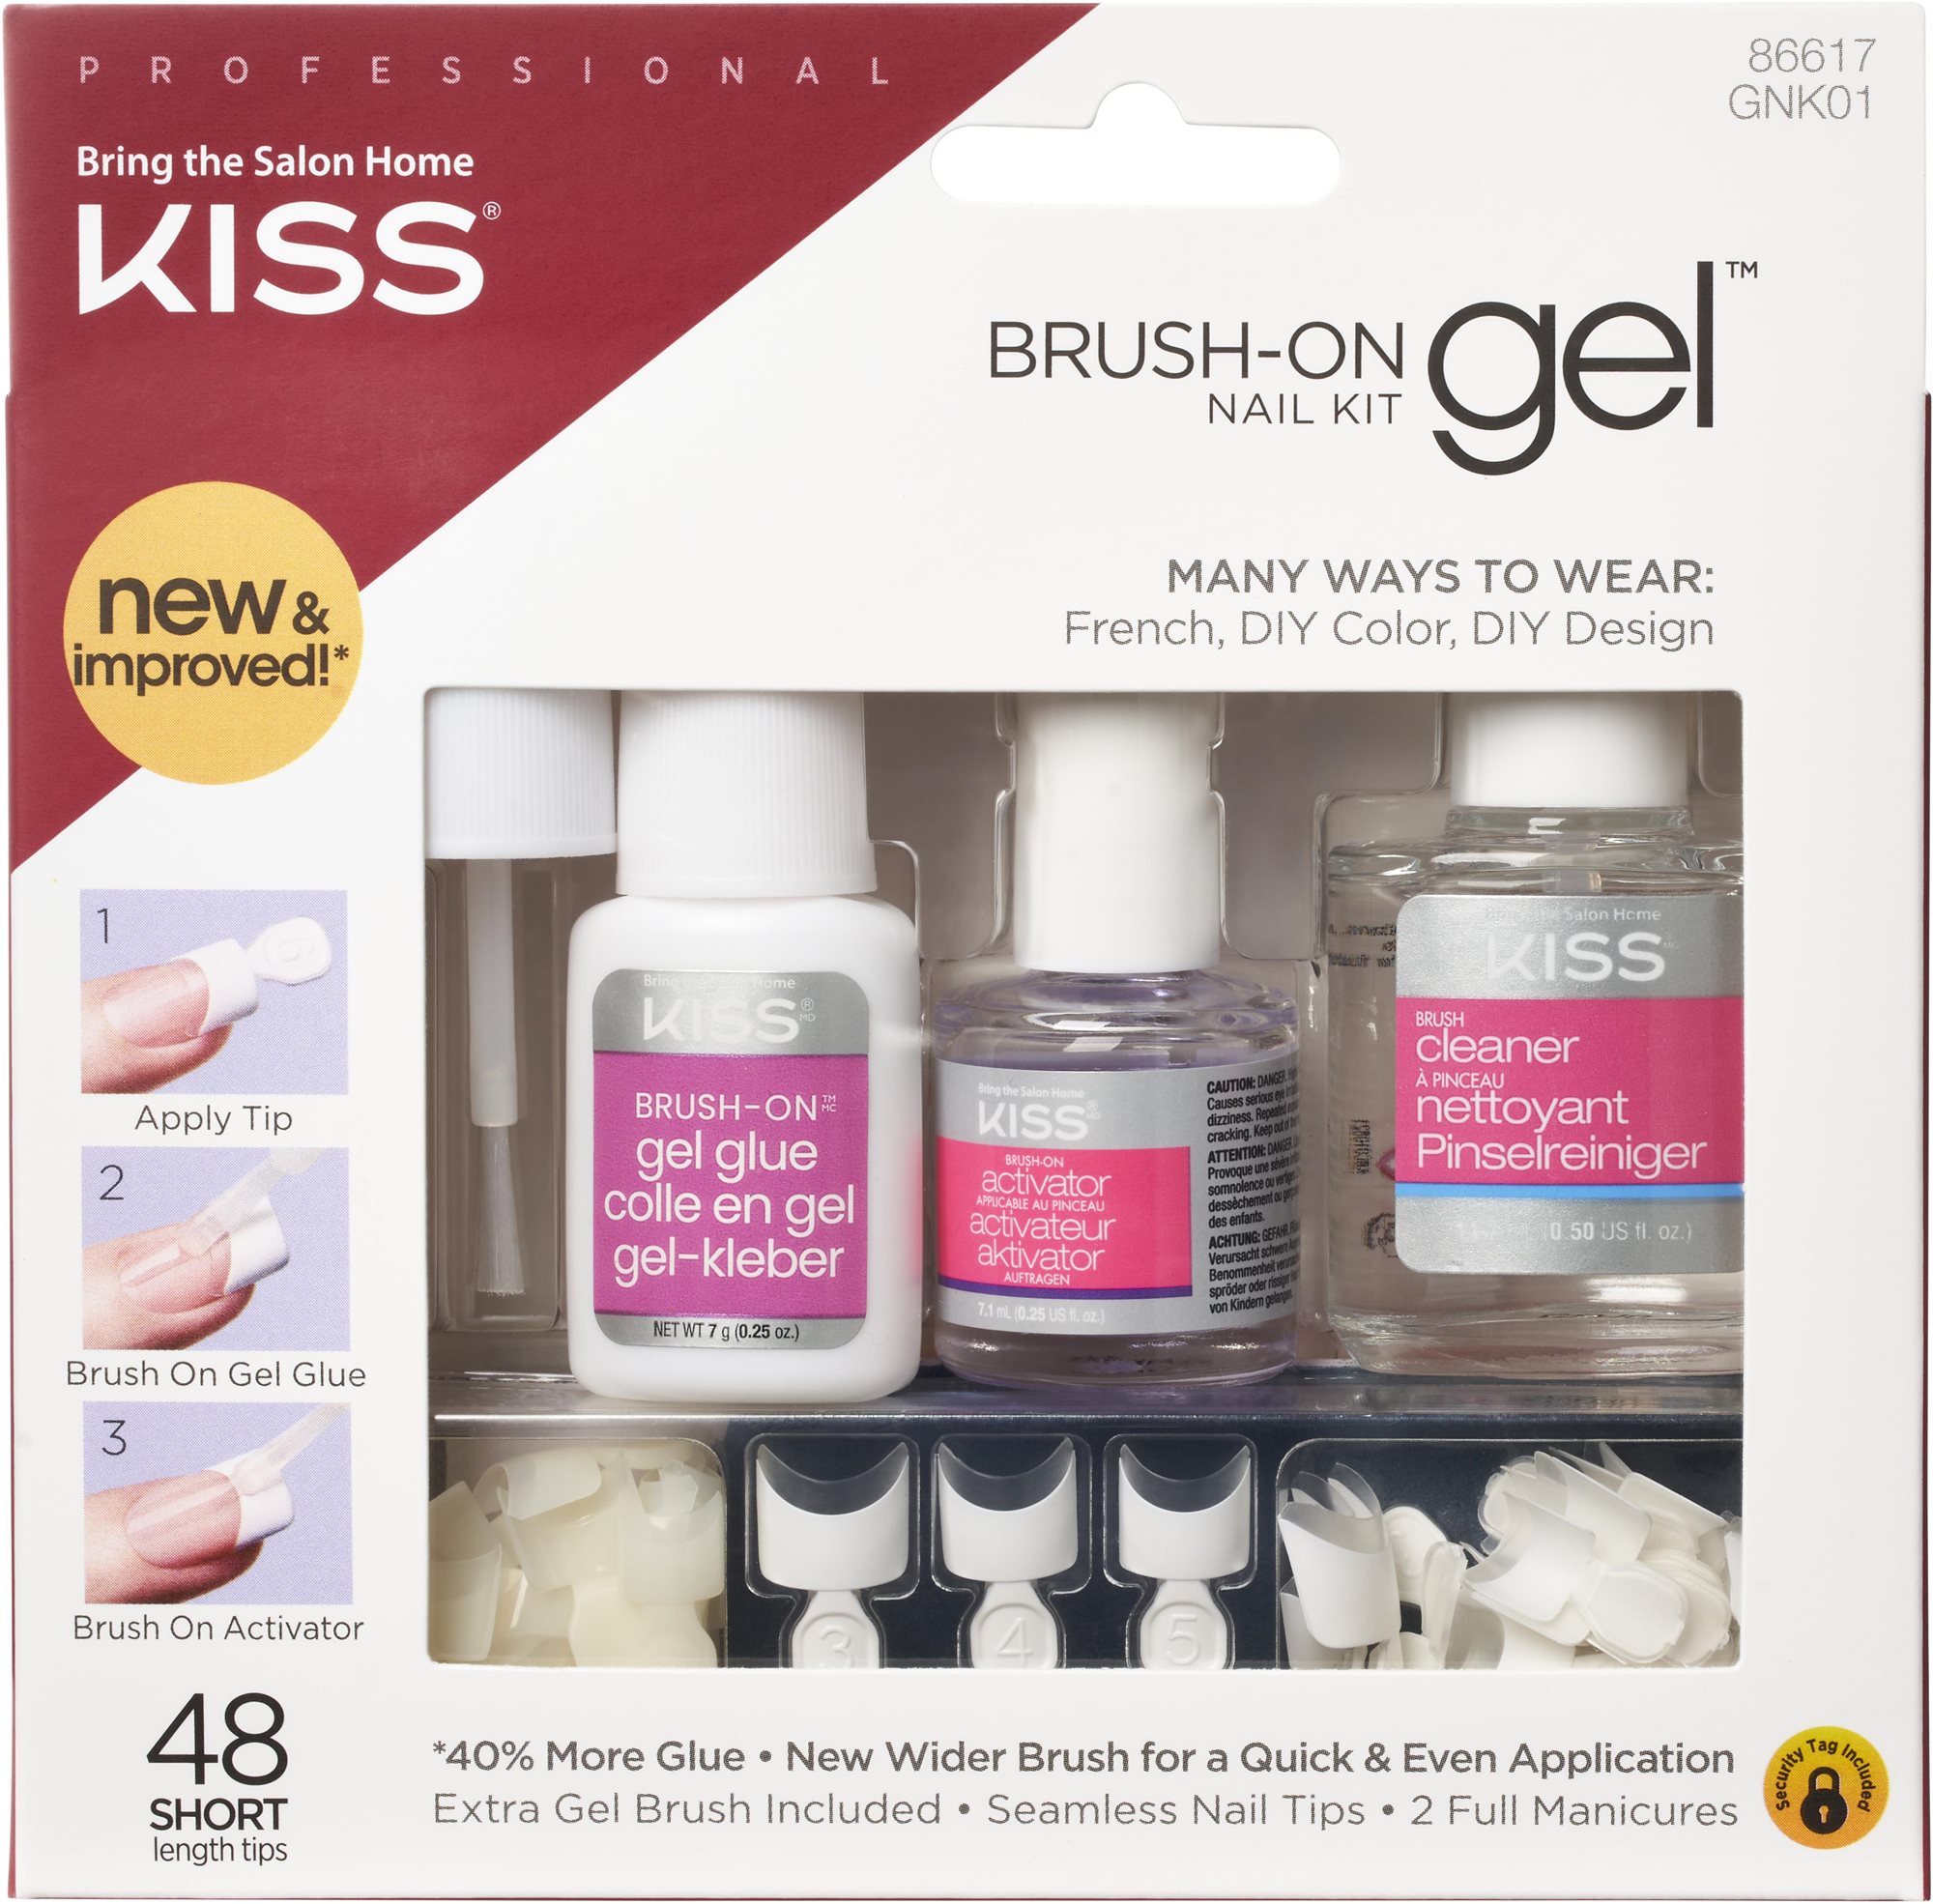 KISS Brush-On Gel Nail Kit